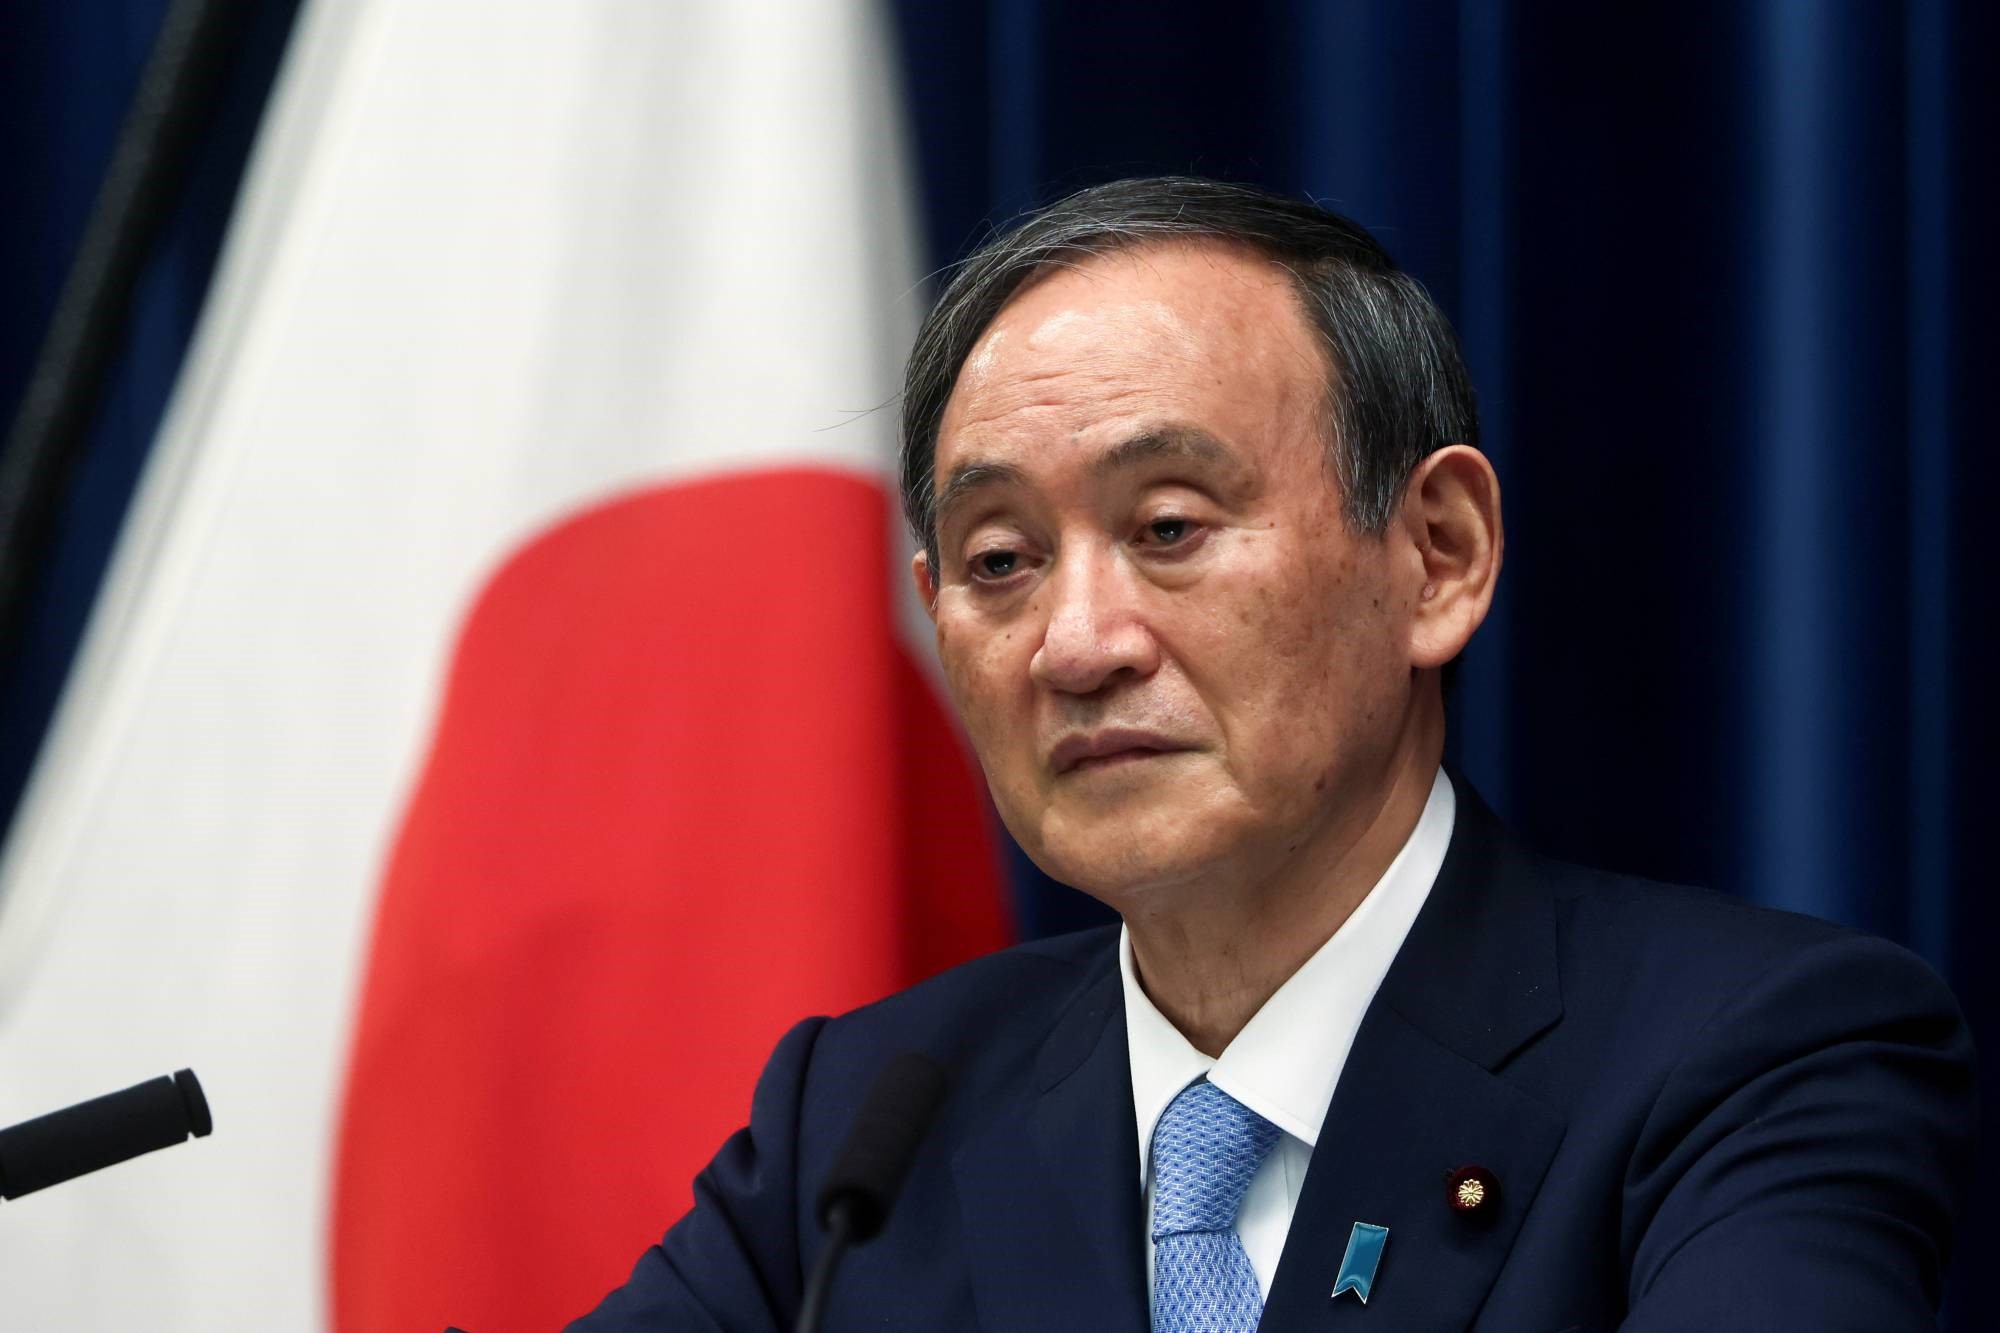 Thủ tướng Nhật Bản Yoshihide Suga, khi đó là chánh văn phòng nội các, bị cáo buộc khuyến khích gây áp lực lên các nhà đầu tư của Toshiba.